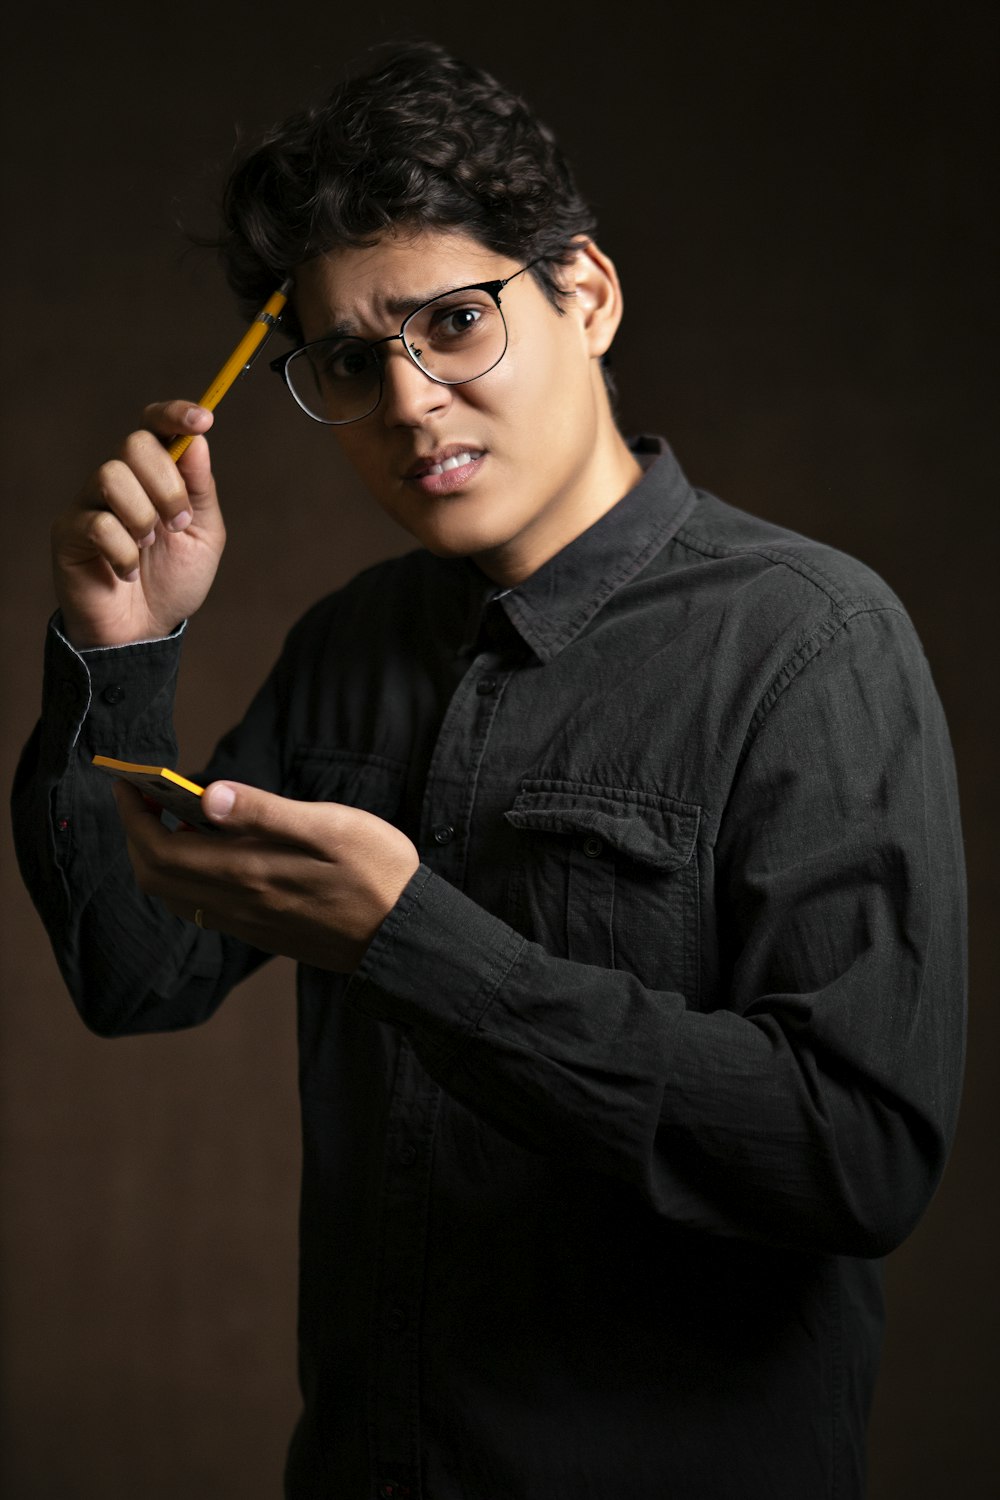 黒のデニムジャケットを着た男性が鉛筆と黄色い付箋を持ち、困惑した様子で立っている